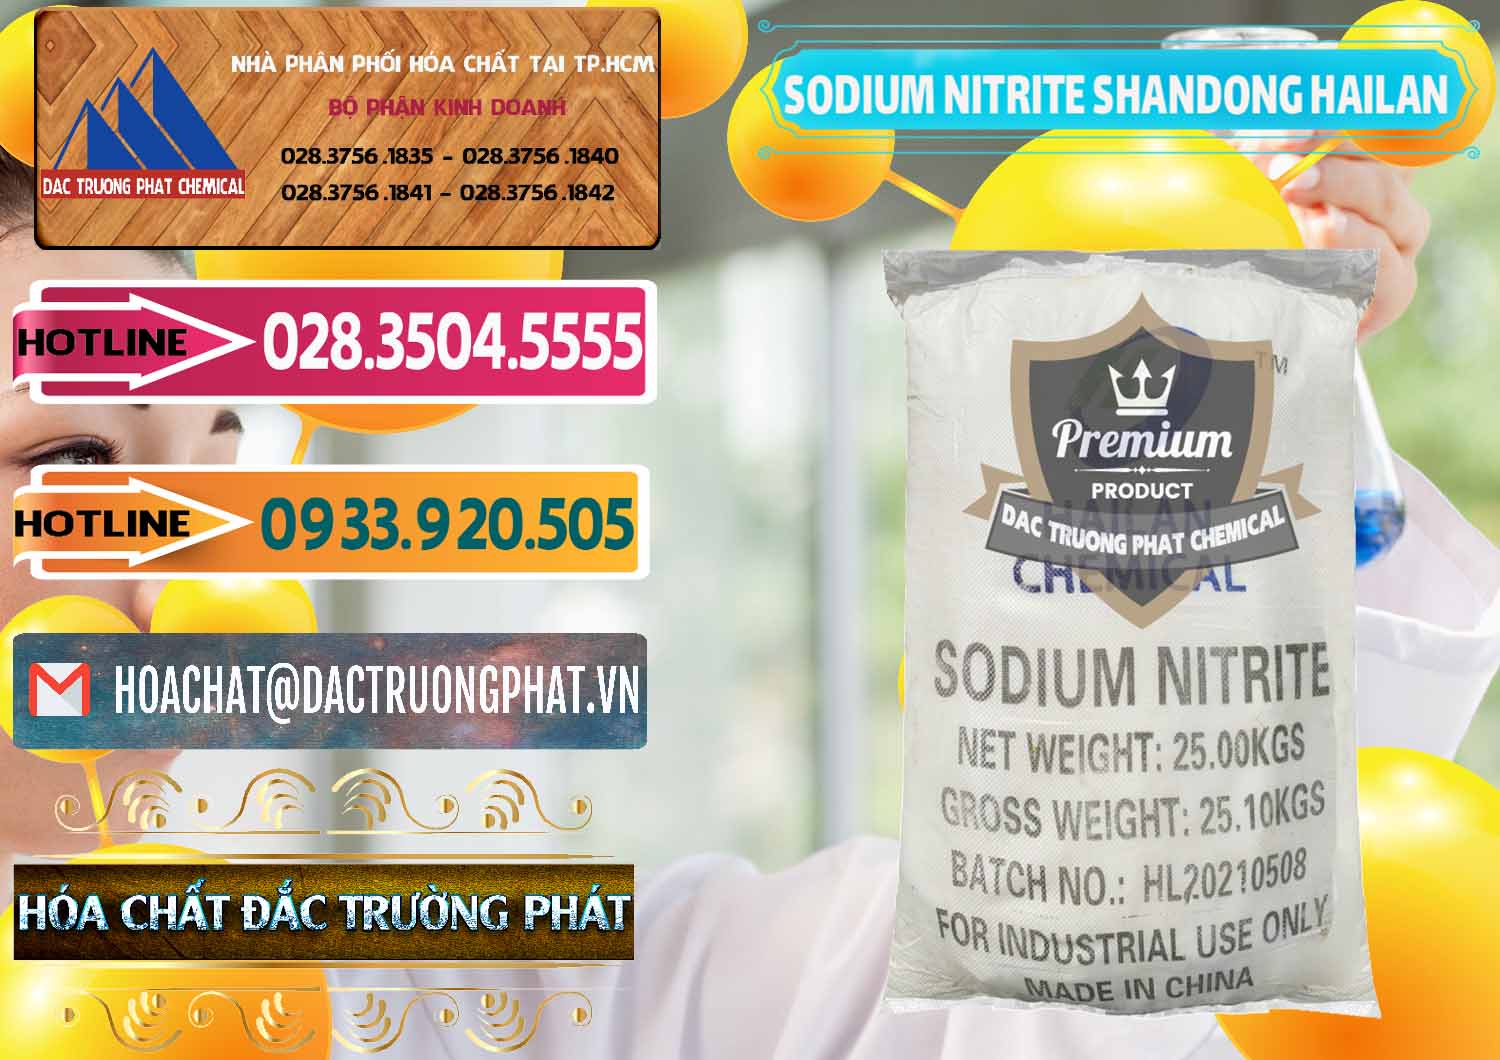 Đơn vị chuyên cung cấp - bán Sodium Nitrite - NANO2 99.3% Shandong Hailan Trung Quốc China - 0284 - Đơn vị chuyên cung cấp _ bán hóa chất tại TP.HCM - dactruongphat.vn